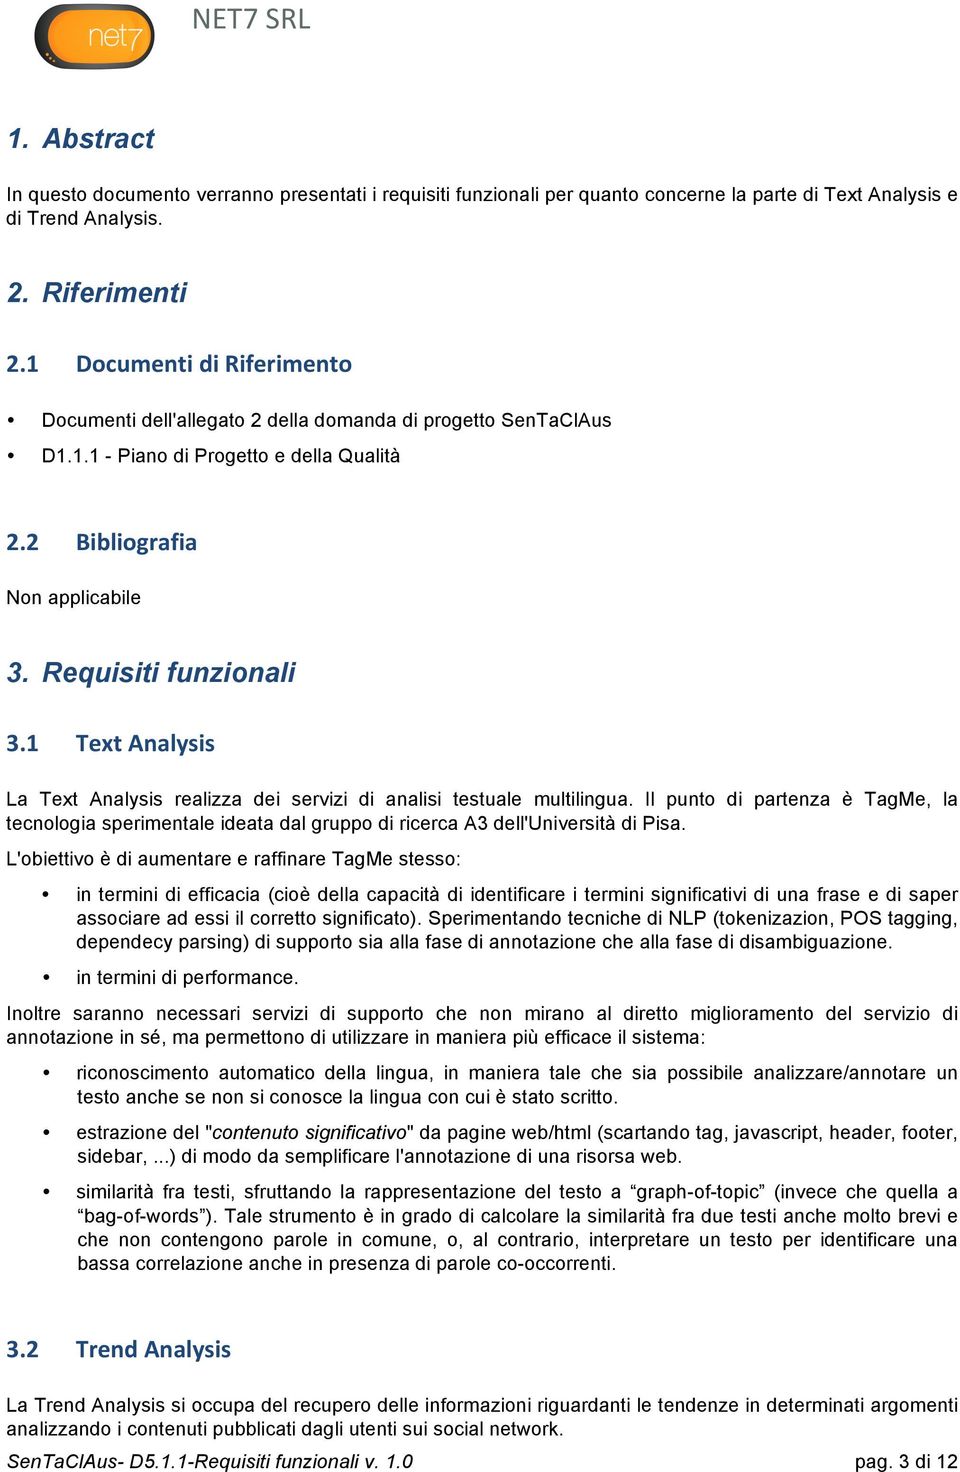 1 Text Analysis La Text Analysis realizza dei servizi di analisi testuale multilingua. Il punto di partenza è TagMe, la tecnologia sperimentale ideata dal gruppo di ricerca A3 dell'università di Pisa.